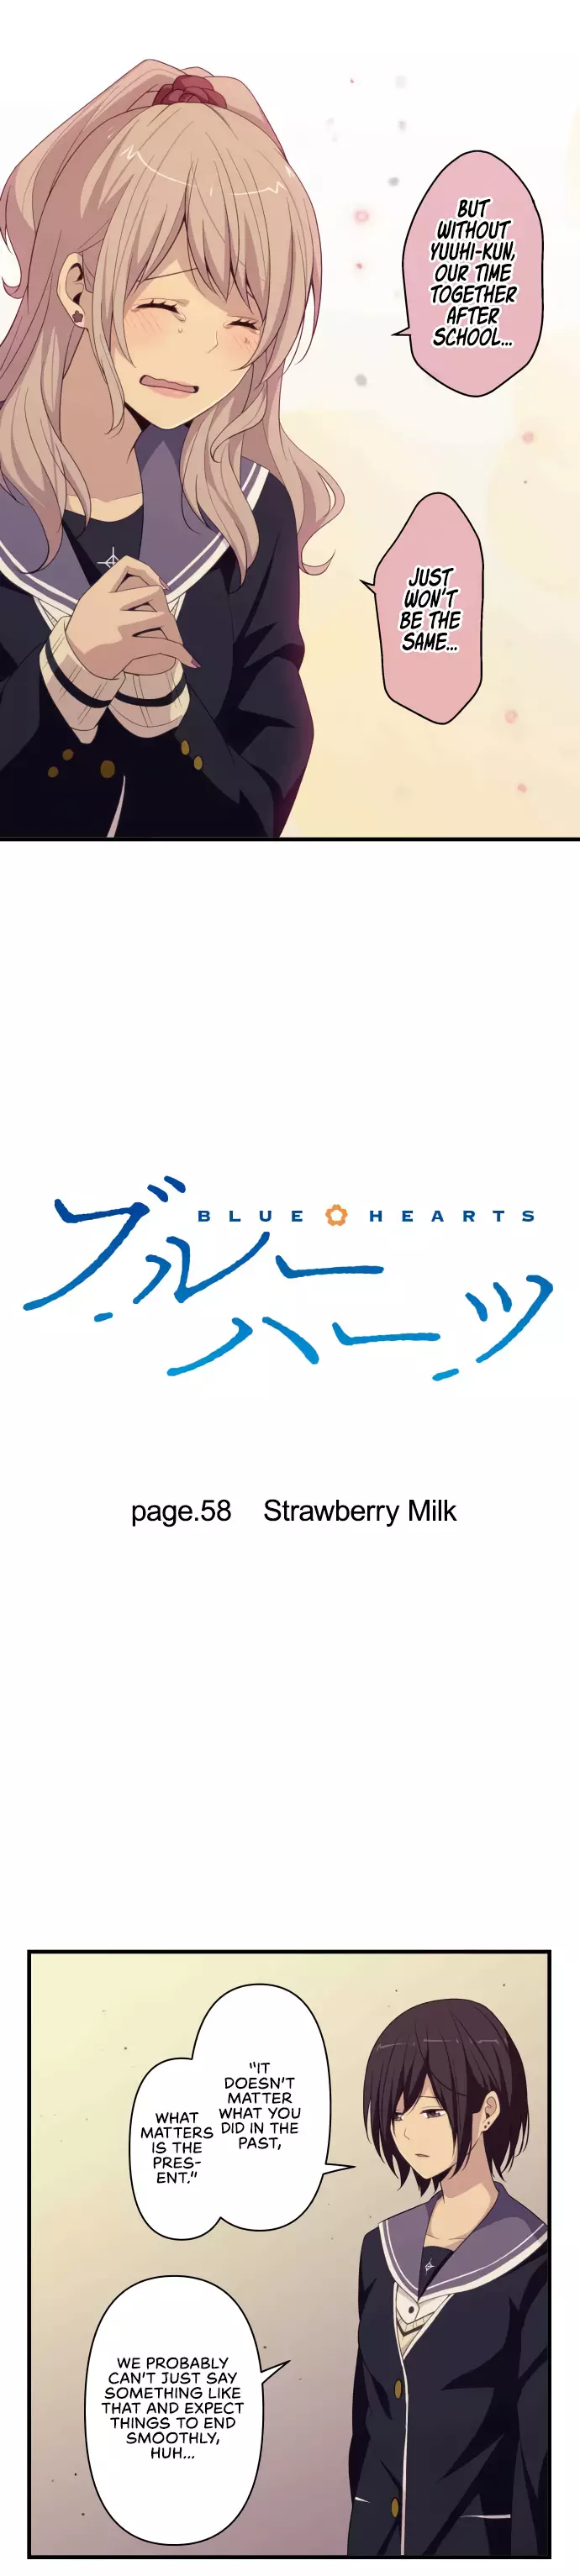 Blue Hearts - 58 page 4-9e075df4